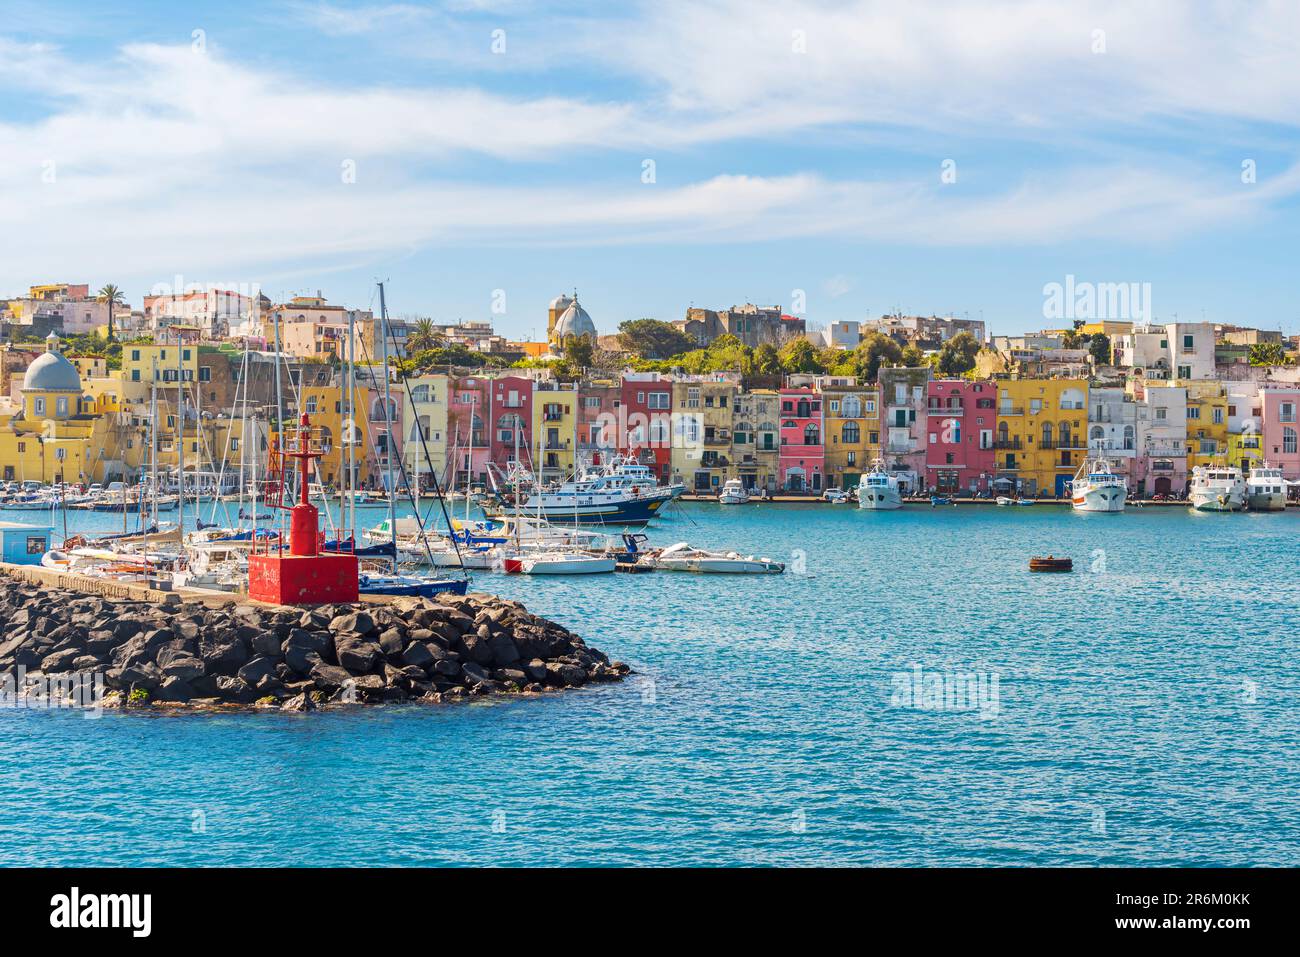 Blick auf den Hafen und das farbenfrohe Dorf Procida, die Insel Procida, das Tyrrhenische Meer, das Viertel Neapel, die Bucht von Neapel, Region Kampanien, Italien, Europa Stockfoto